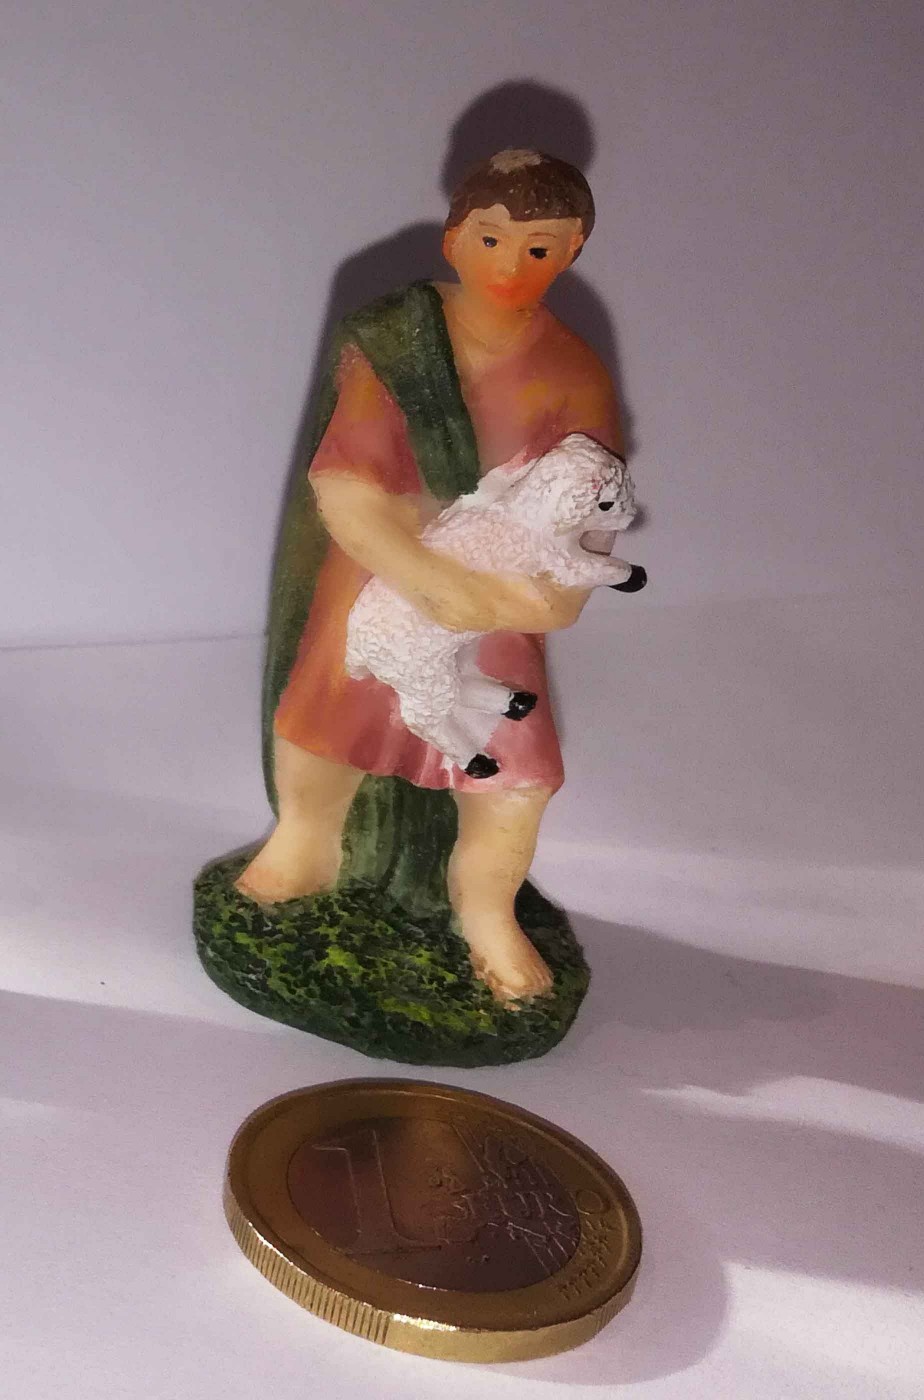 Figurina Presepe in plastica (cm 5,5) pastore con pecora in braccio